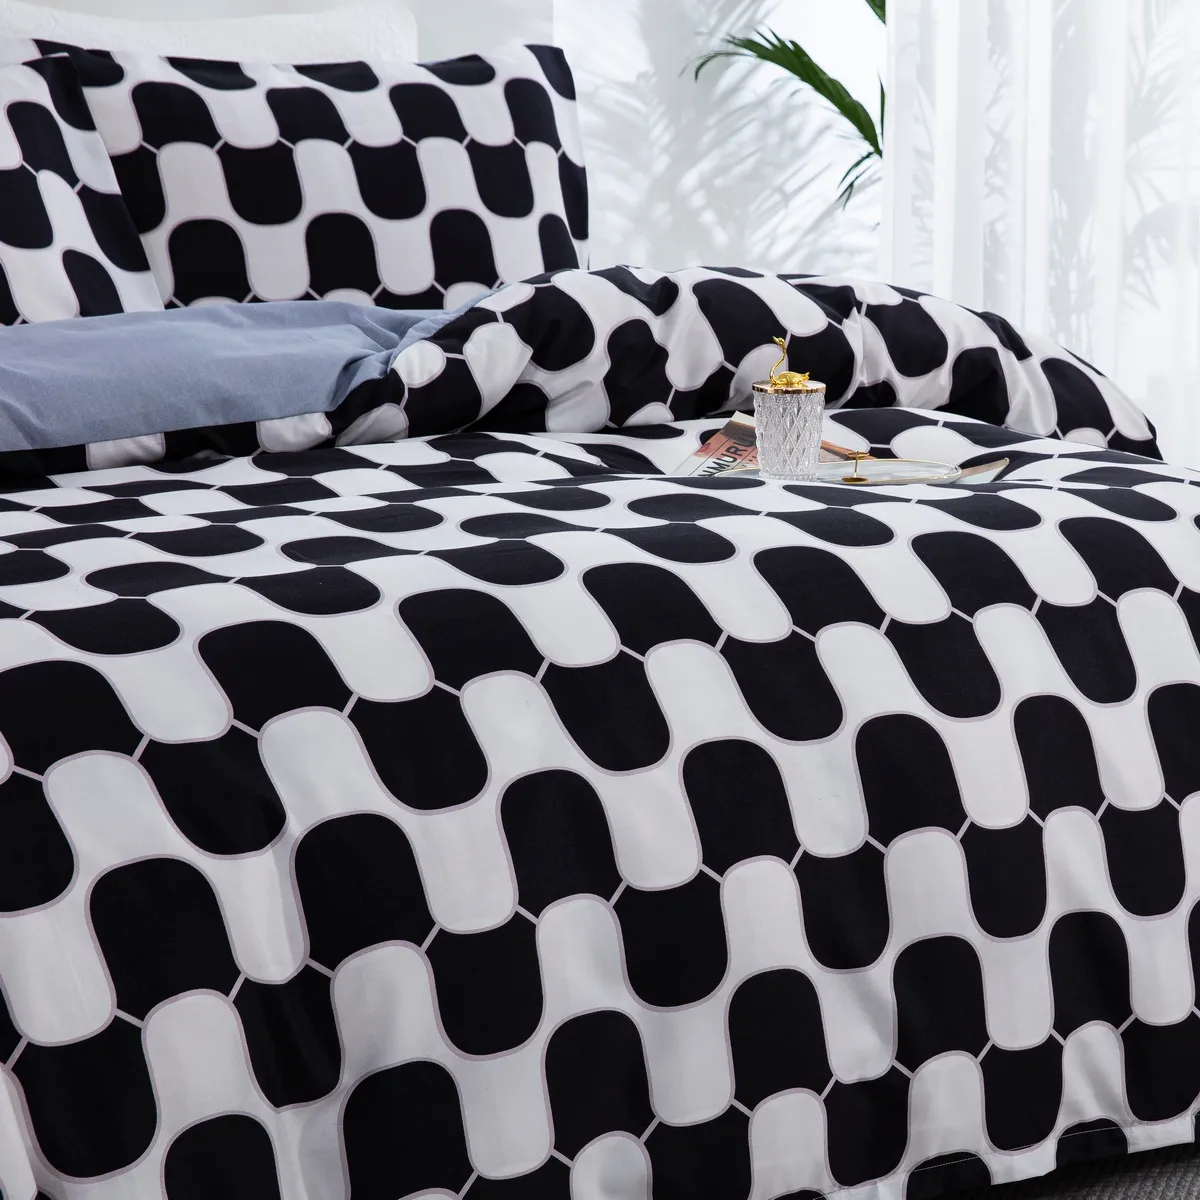 2/3pcs Juego de ropa de cama moderno y minimalista con patrón geométrico de dibujos animados, incluye funda nórdica y fundas de almohada blanco y negro big image 1